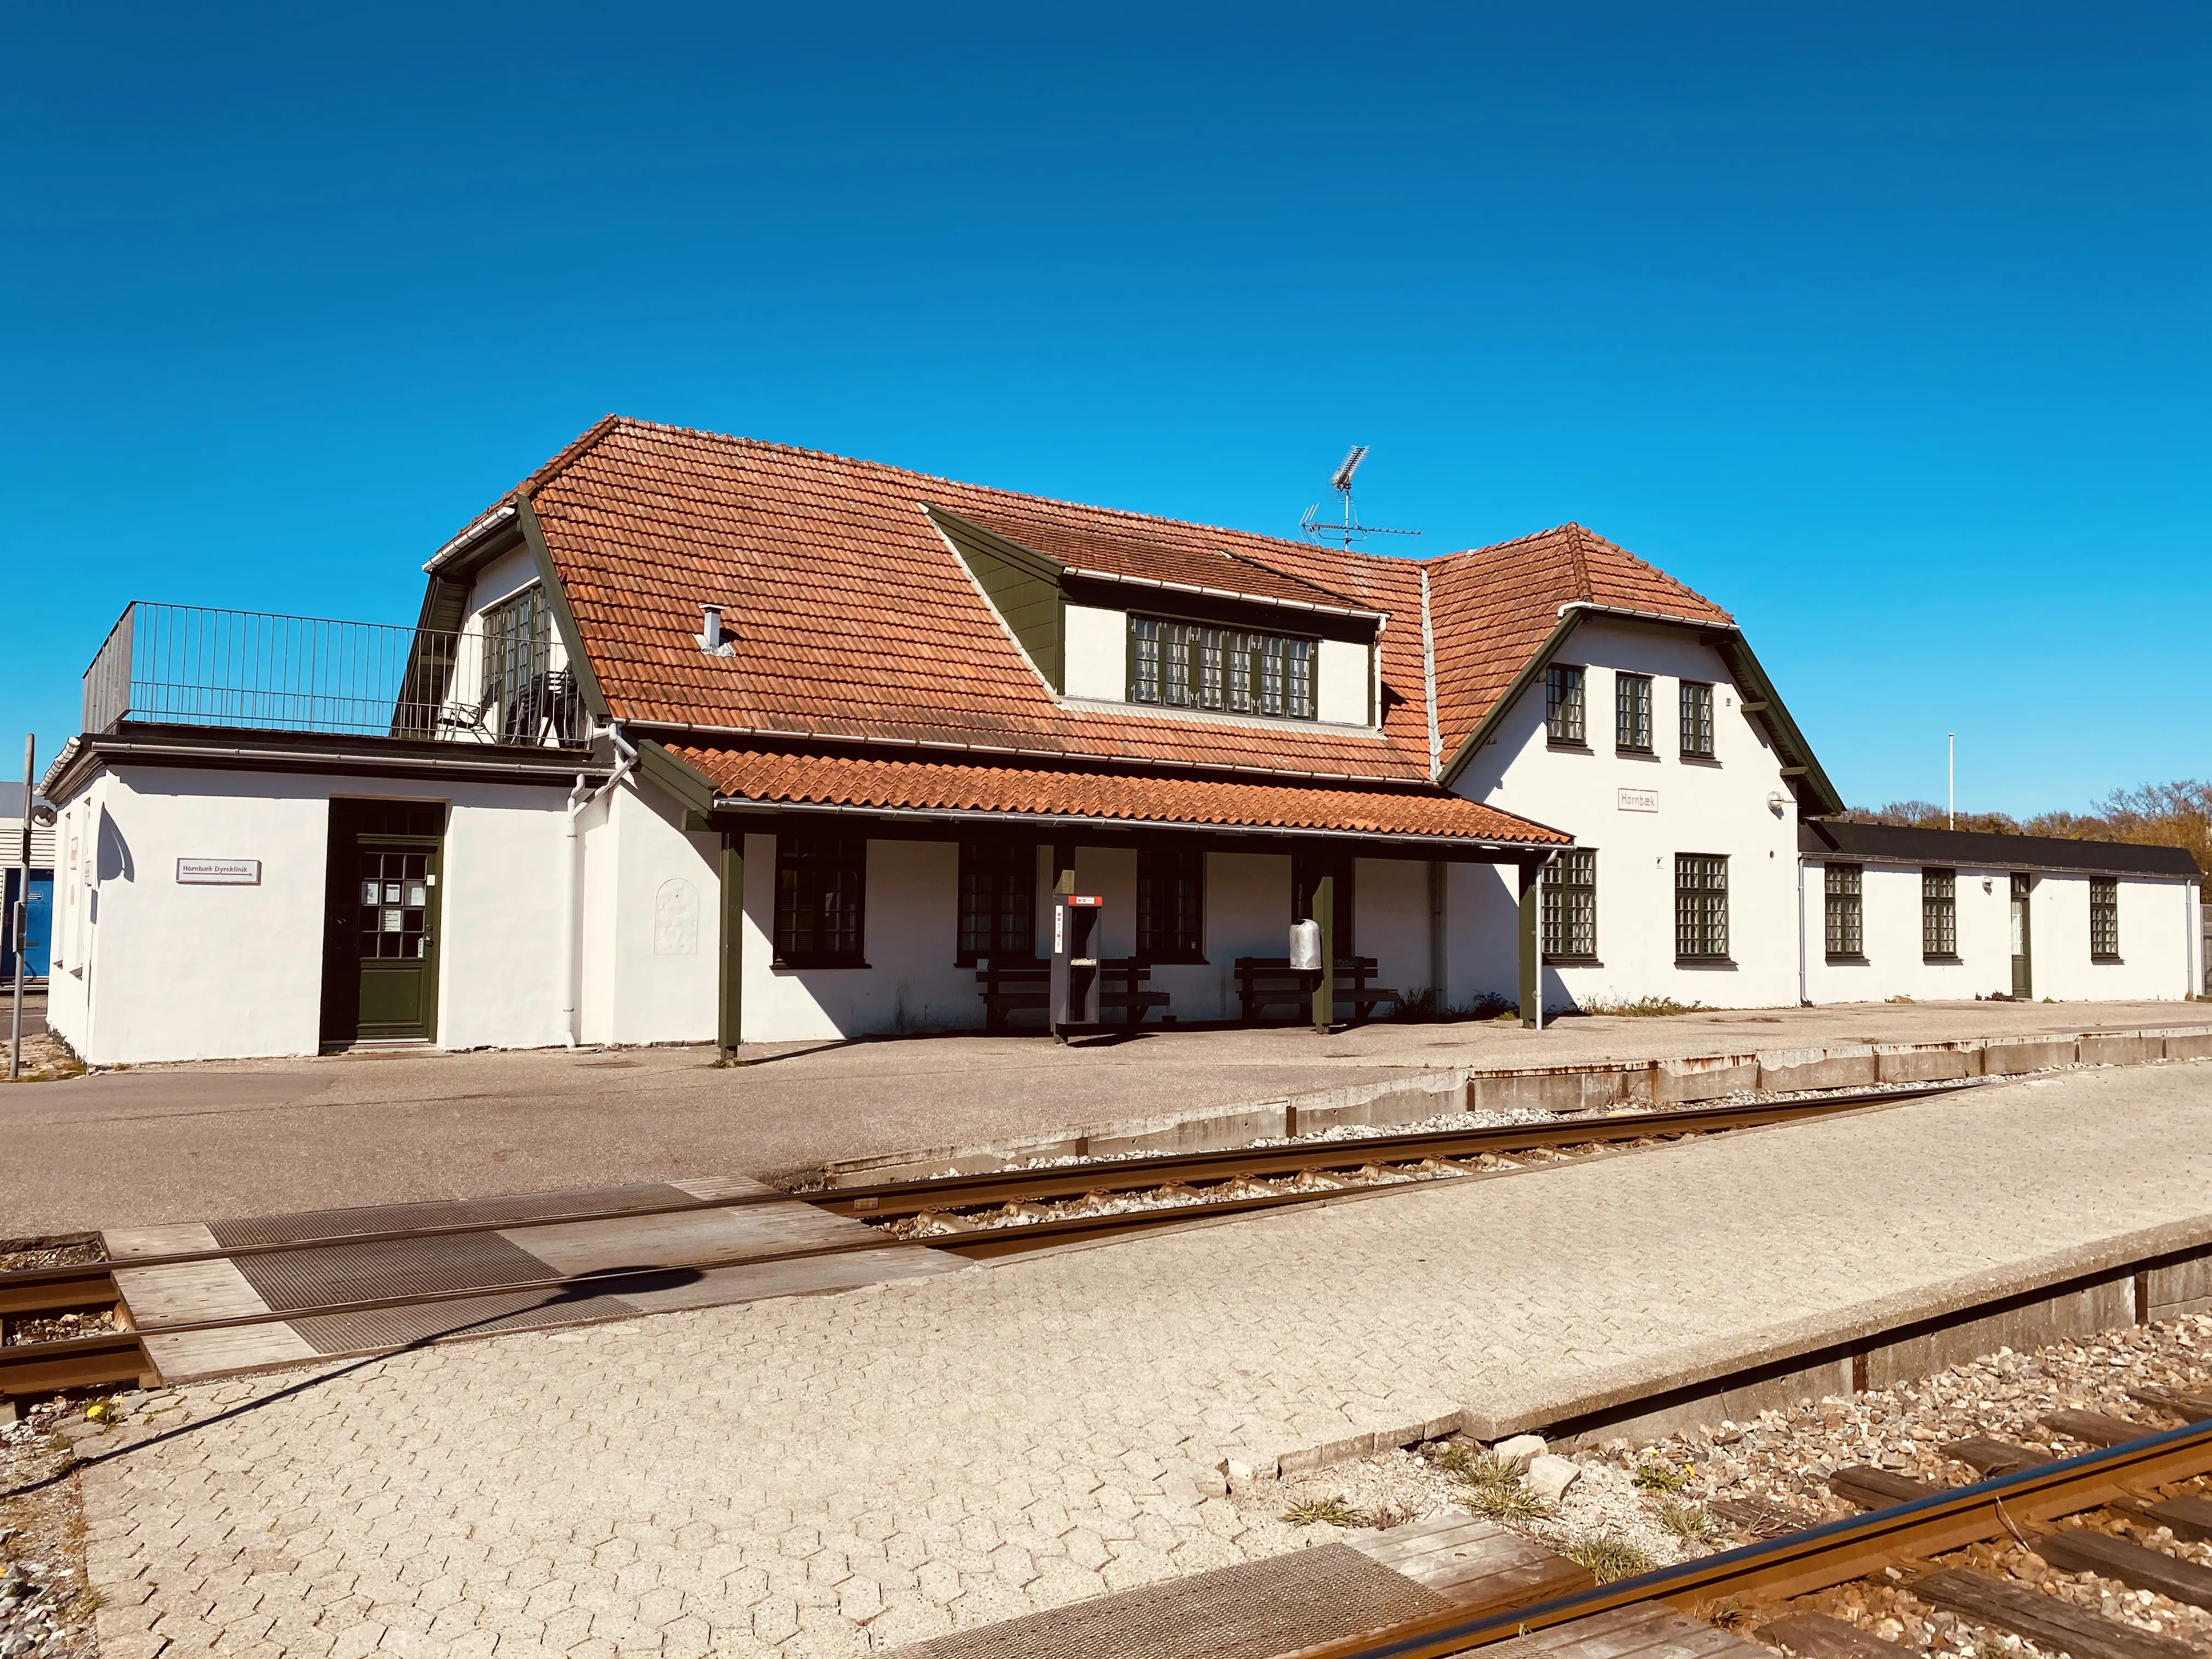 Hornbæk Station.